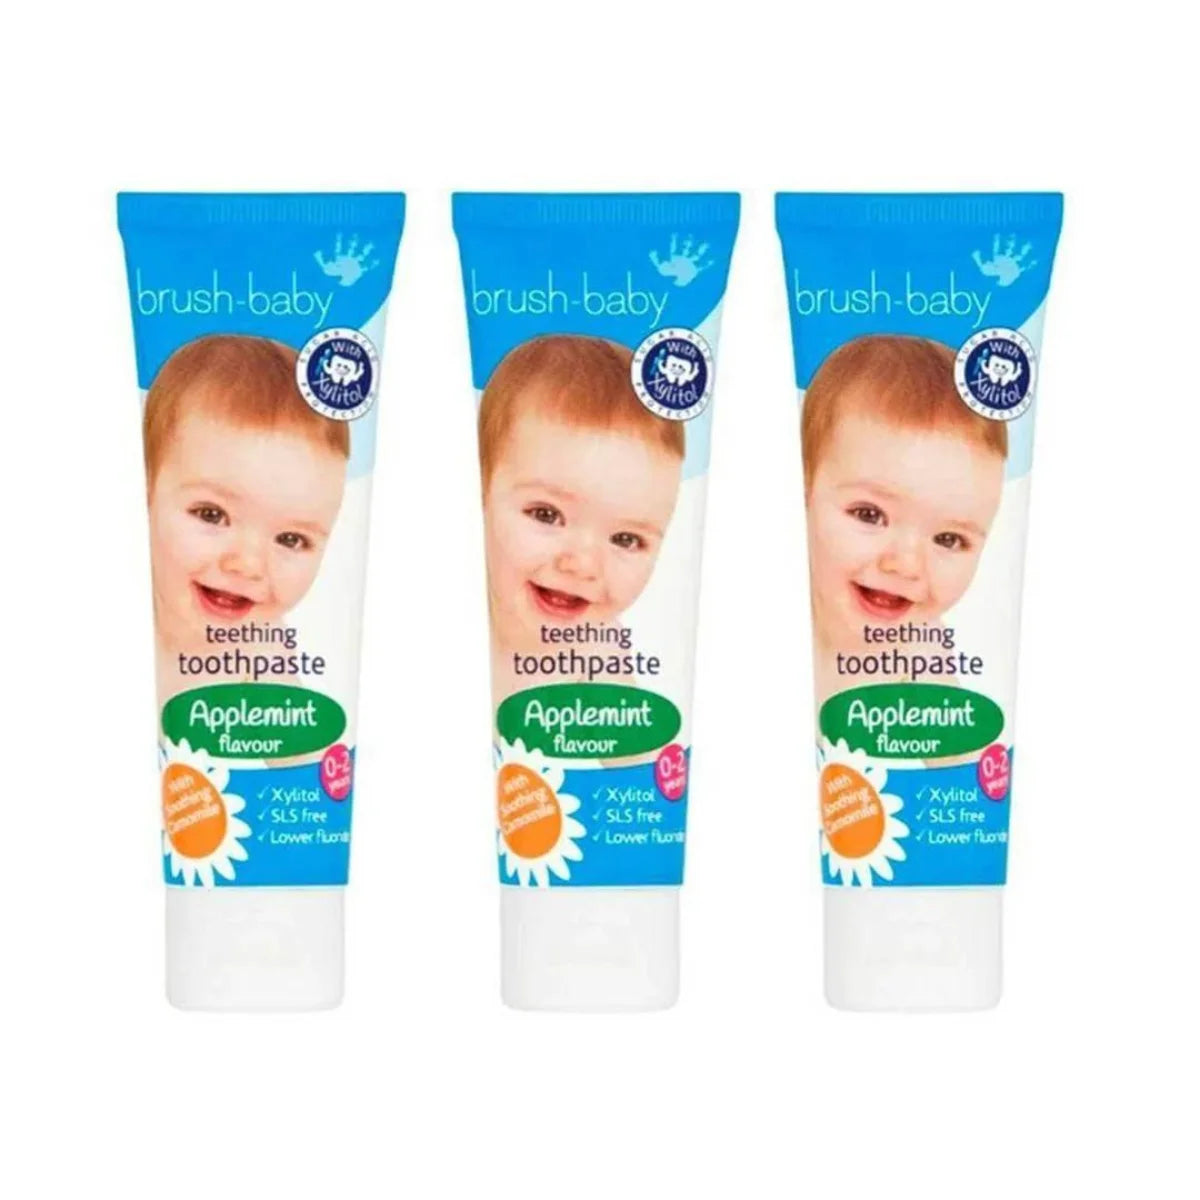 Brush Baby infant milk teeth toothpaste for teething babies